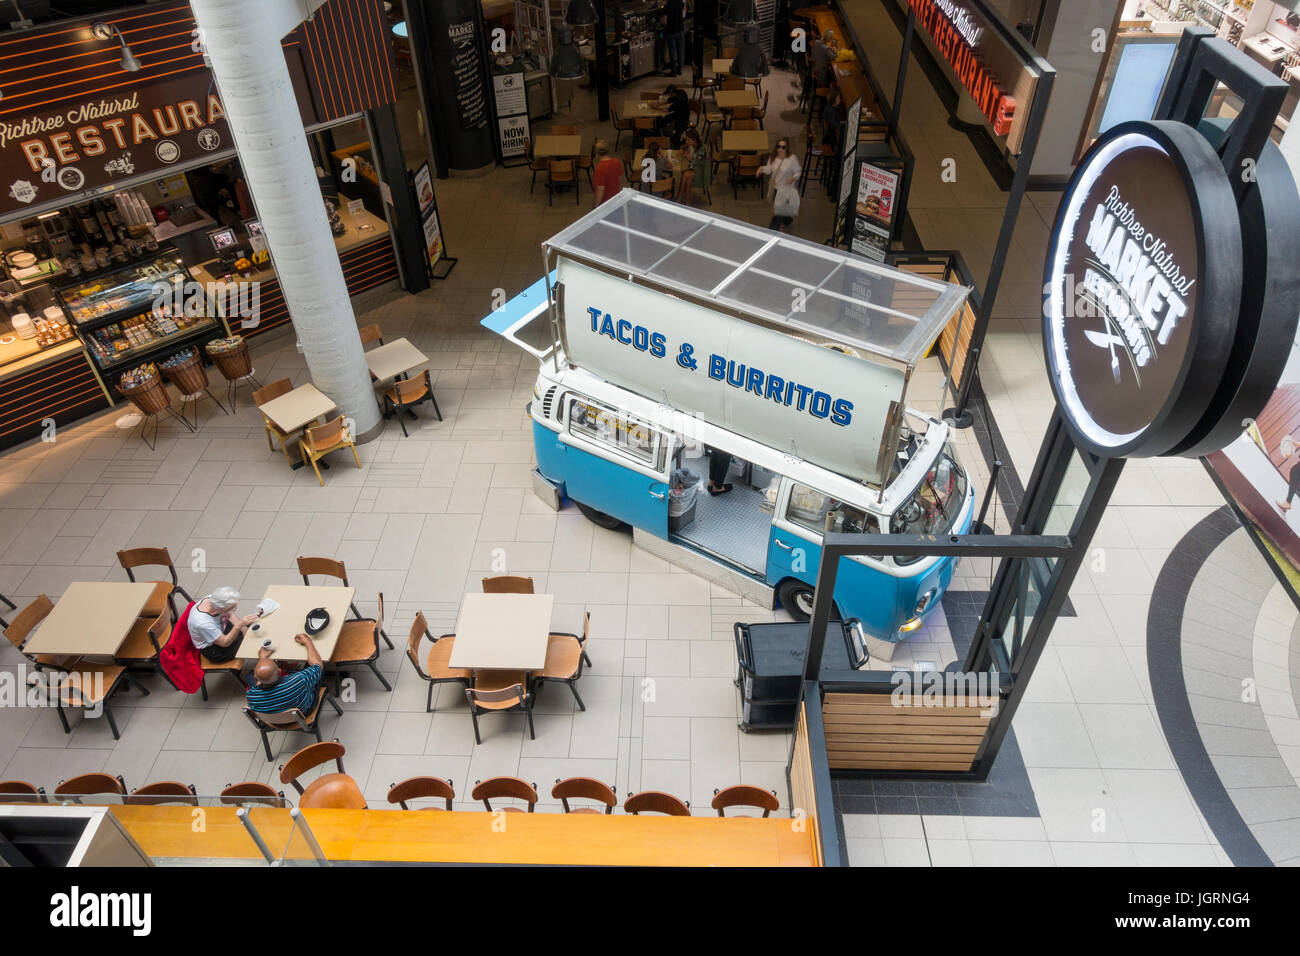 Une fourgonnette Volkswagen Camper convertie qui vend des tacos et des burritos à la cour d'alimentation du Centre Eaton de Toronto, un centre commercial et un centre commercial canadien bien connu Banque D'Images